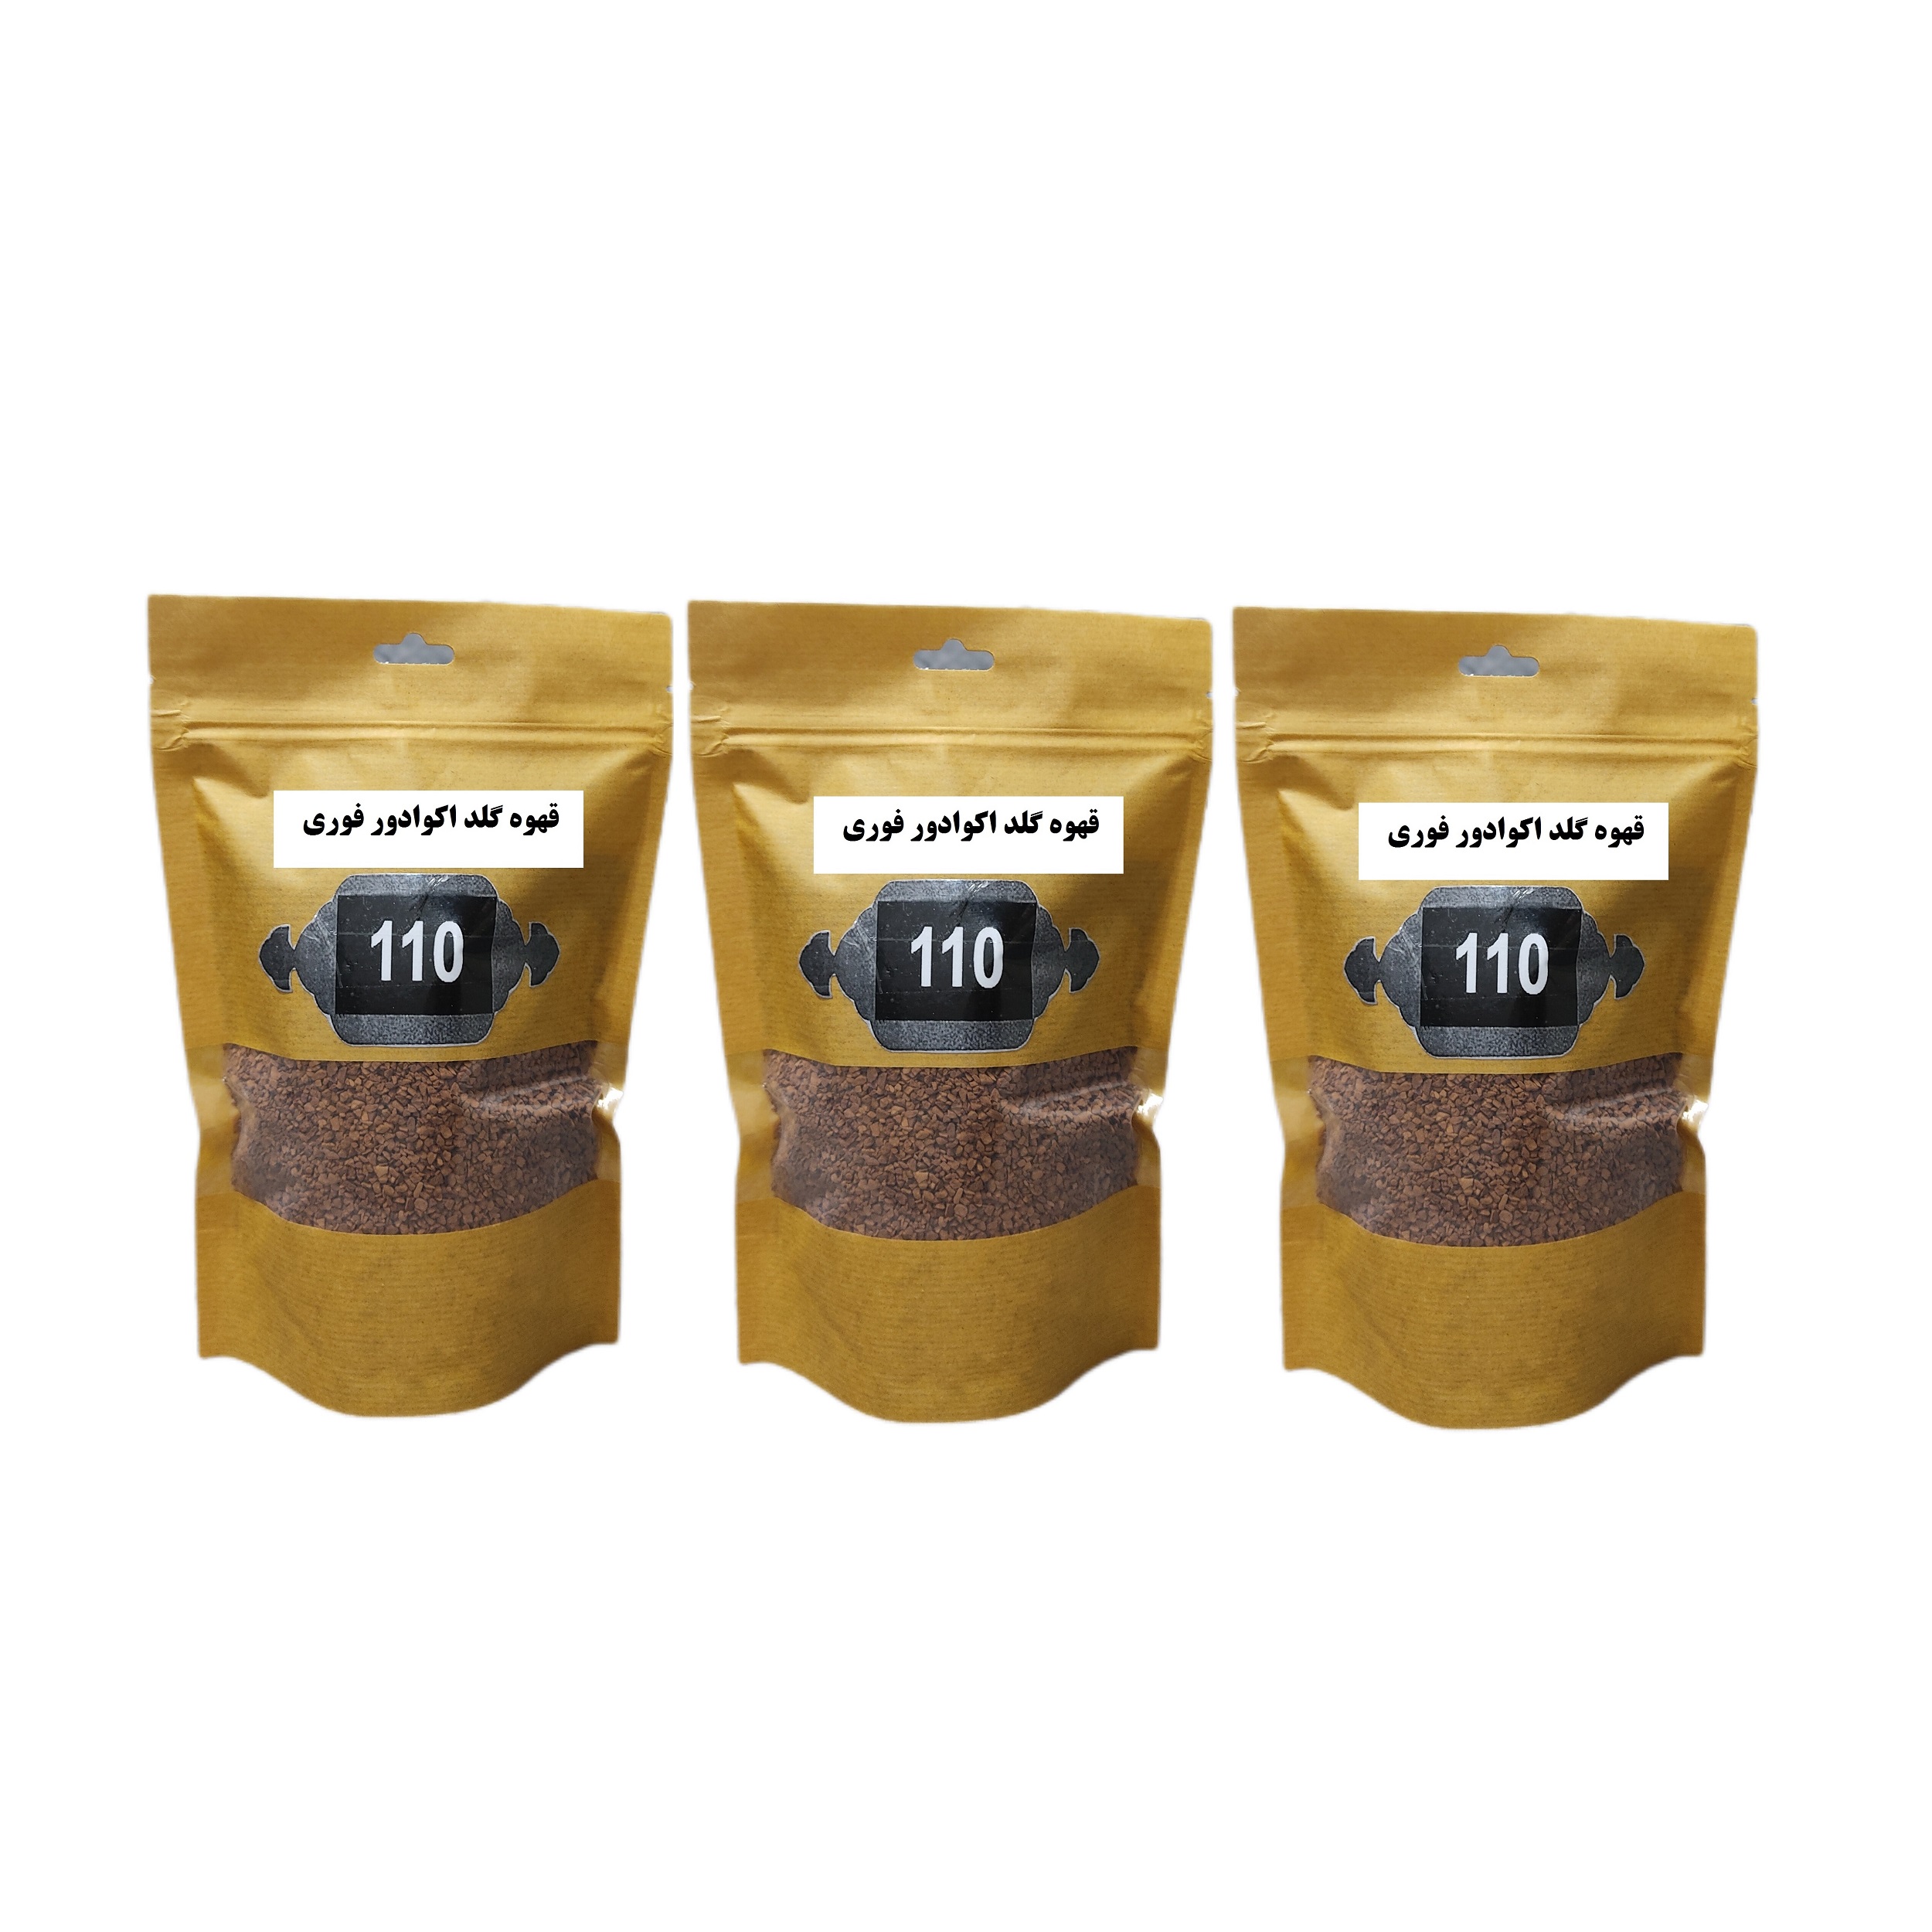 قهوه گلد اکوادور فوری 110 - 200 گرم بسته 3 عددی